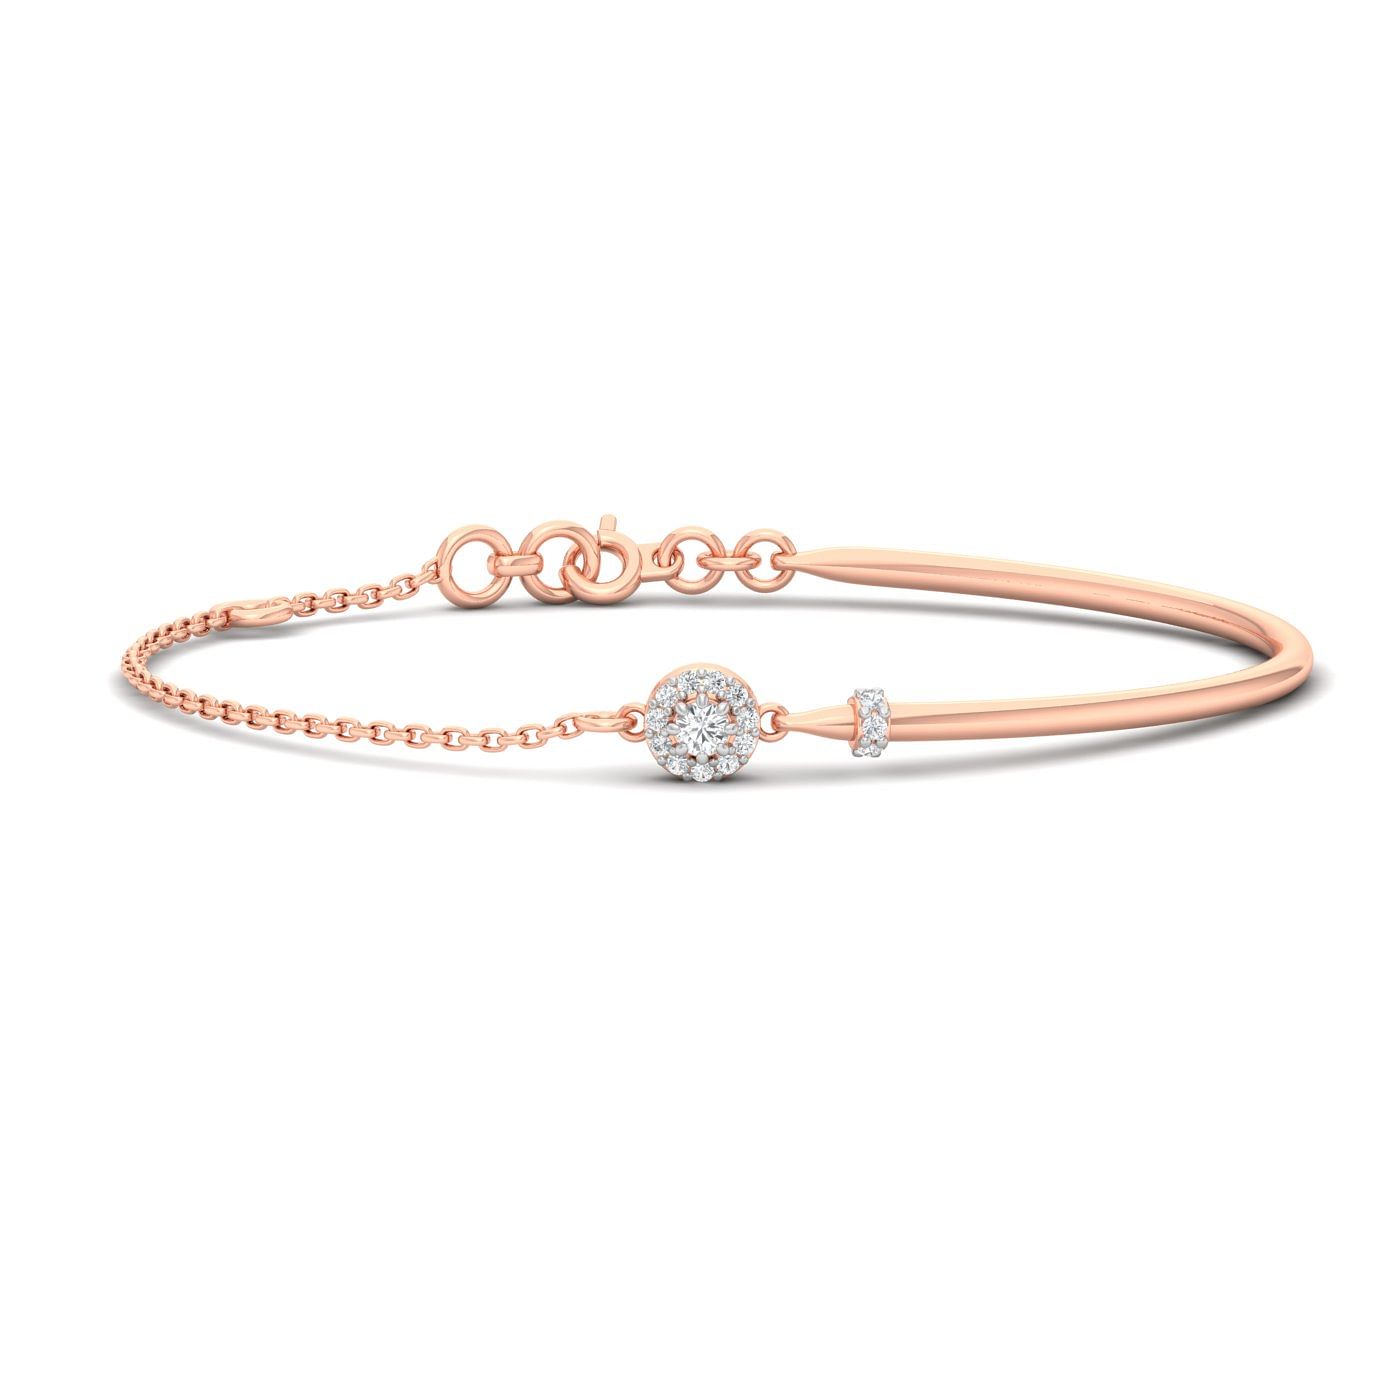 Rose Gold Damini Diamond Bracelet For Engagement Gift